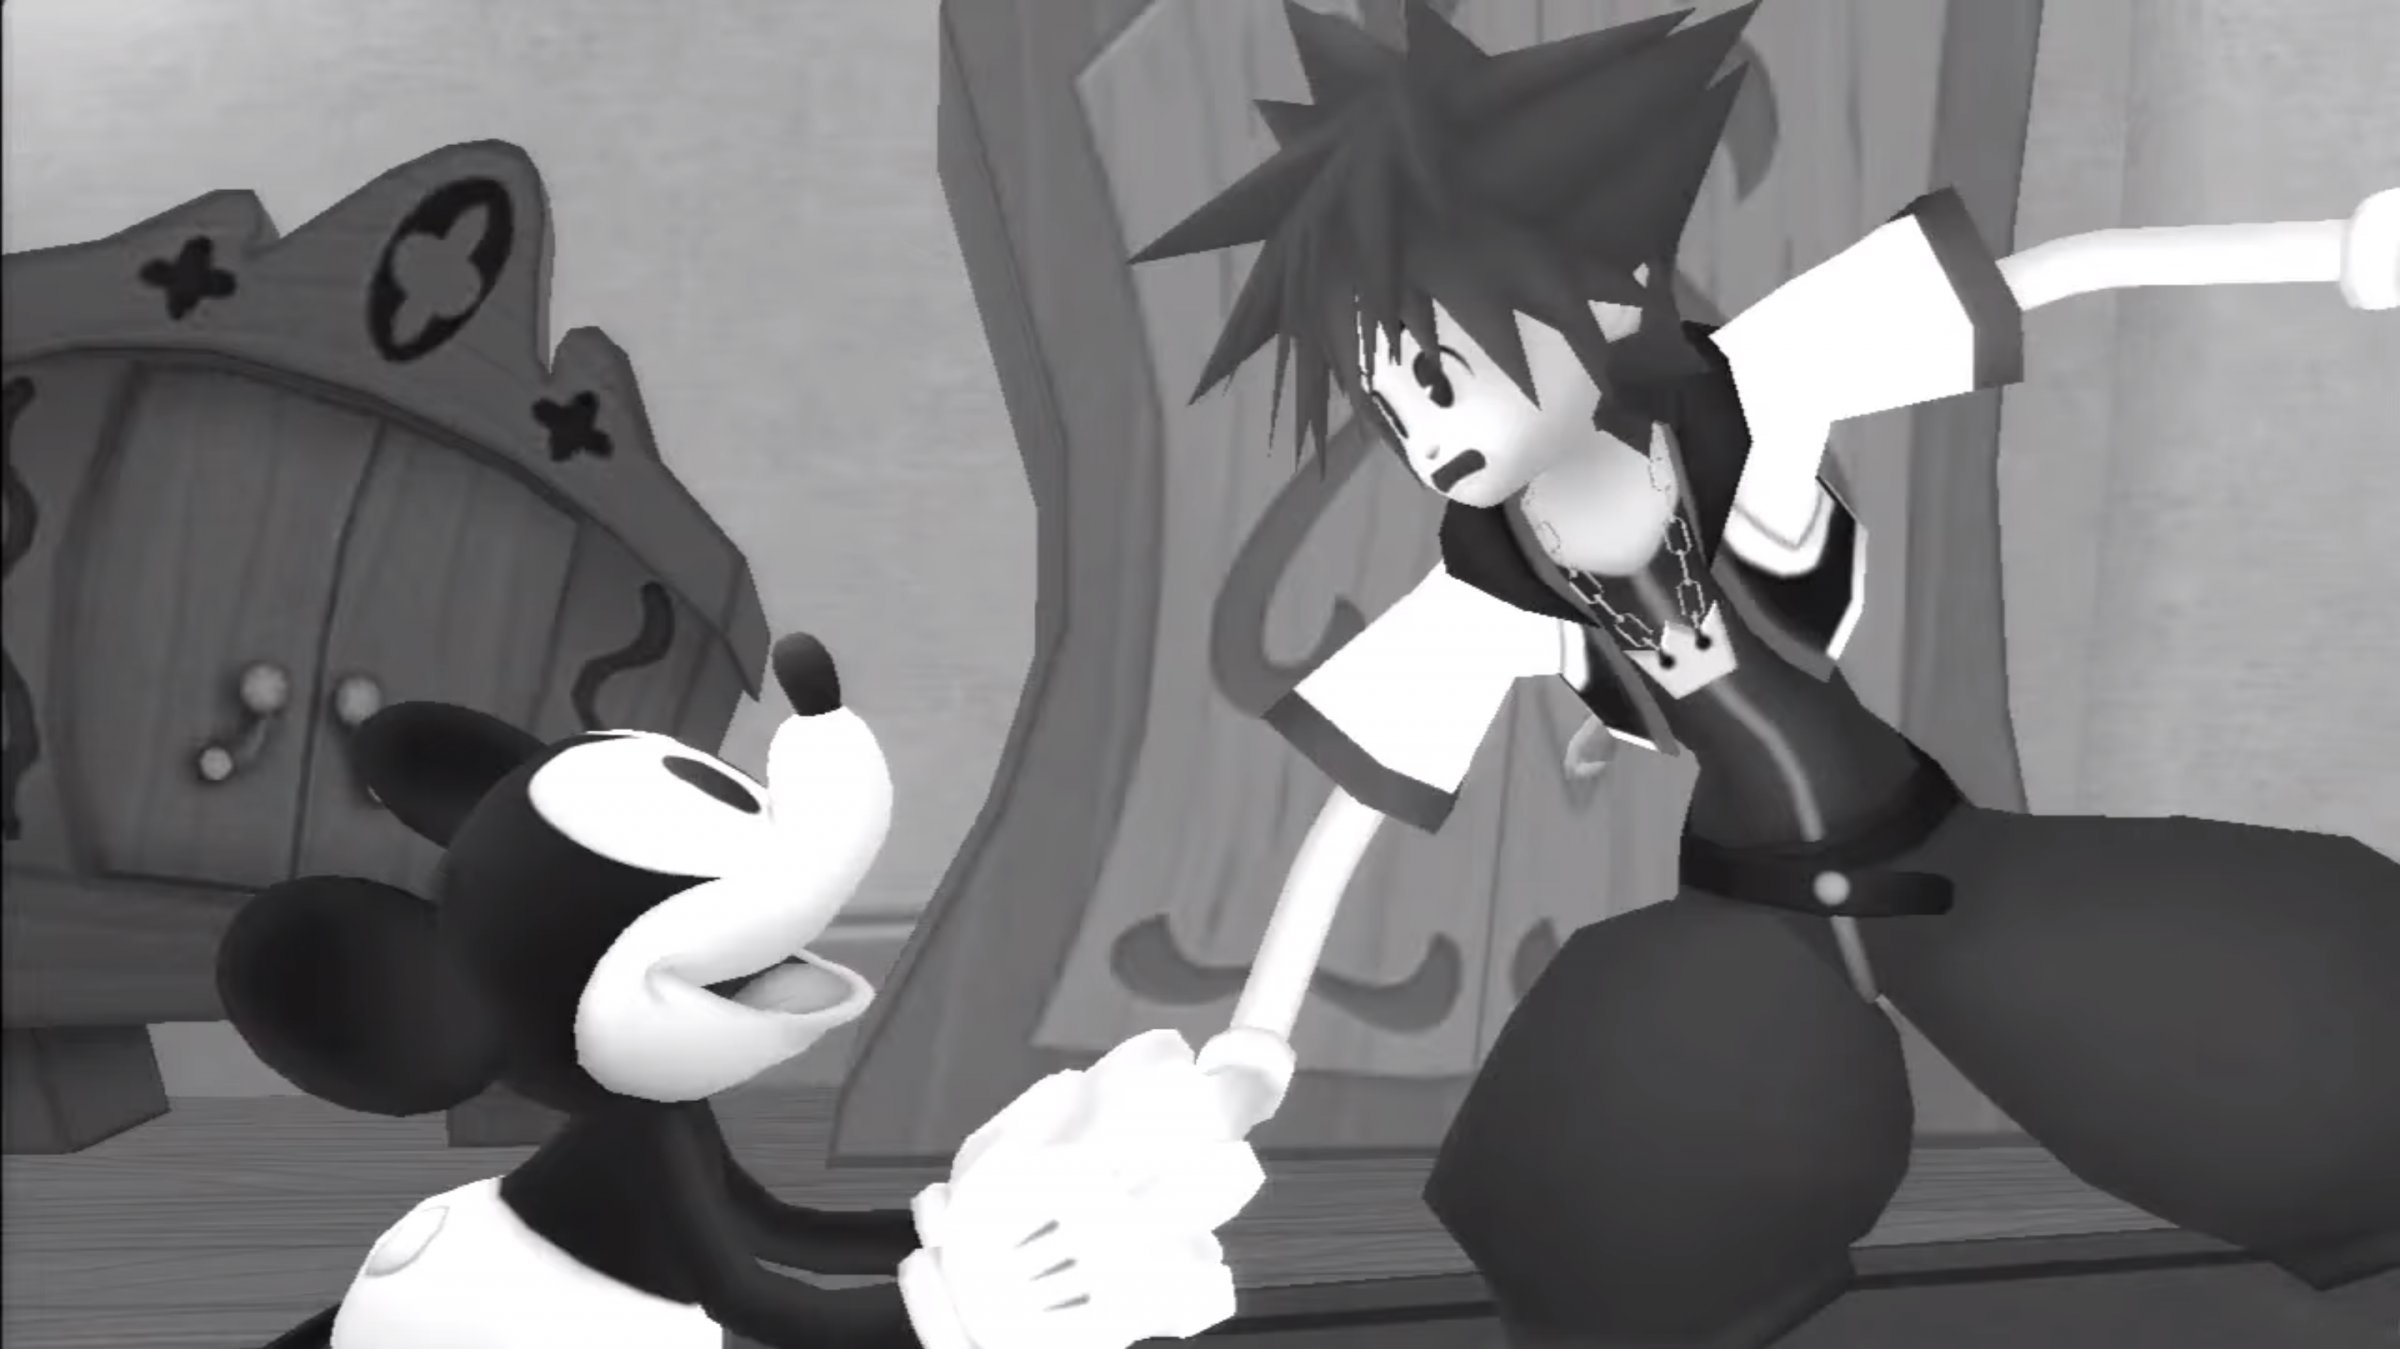 Mickey - Kingdom Hearts Insider